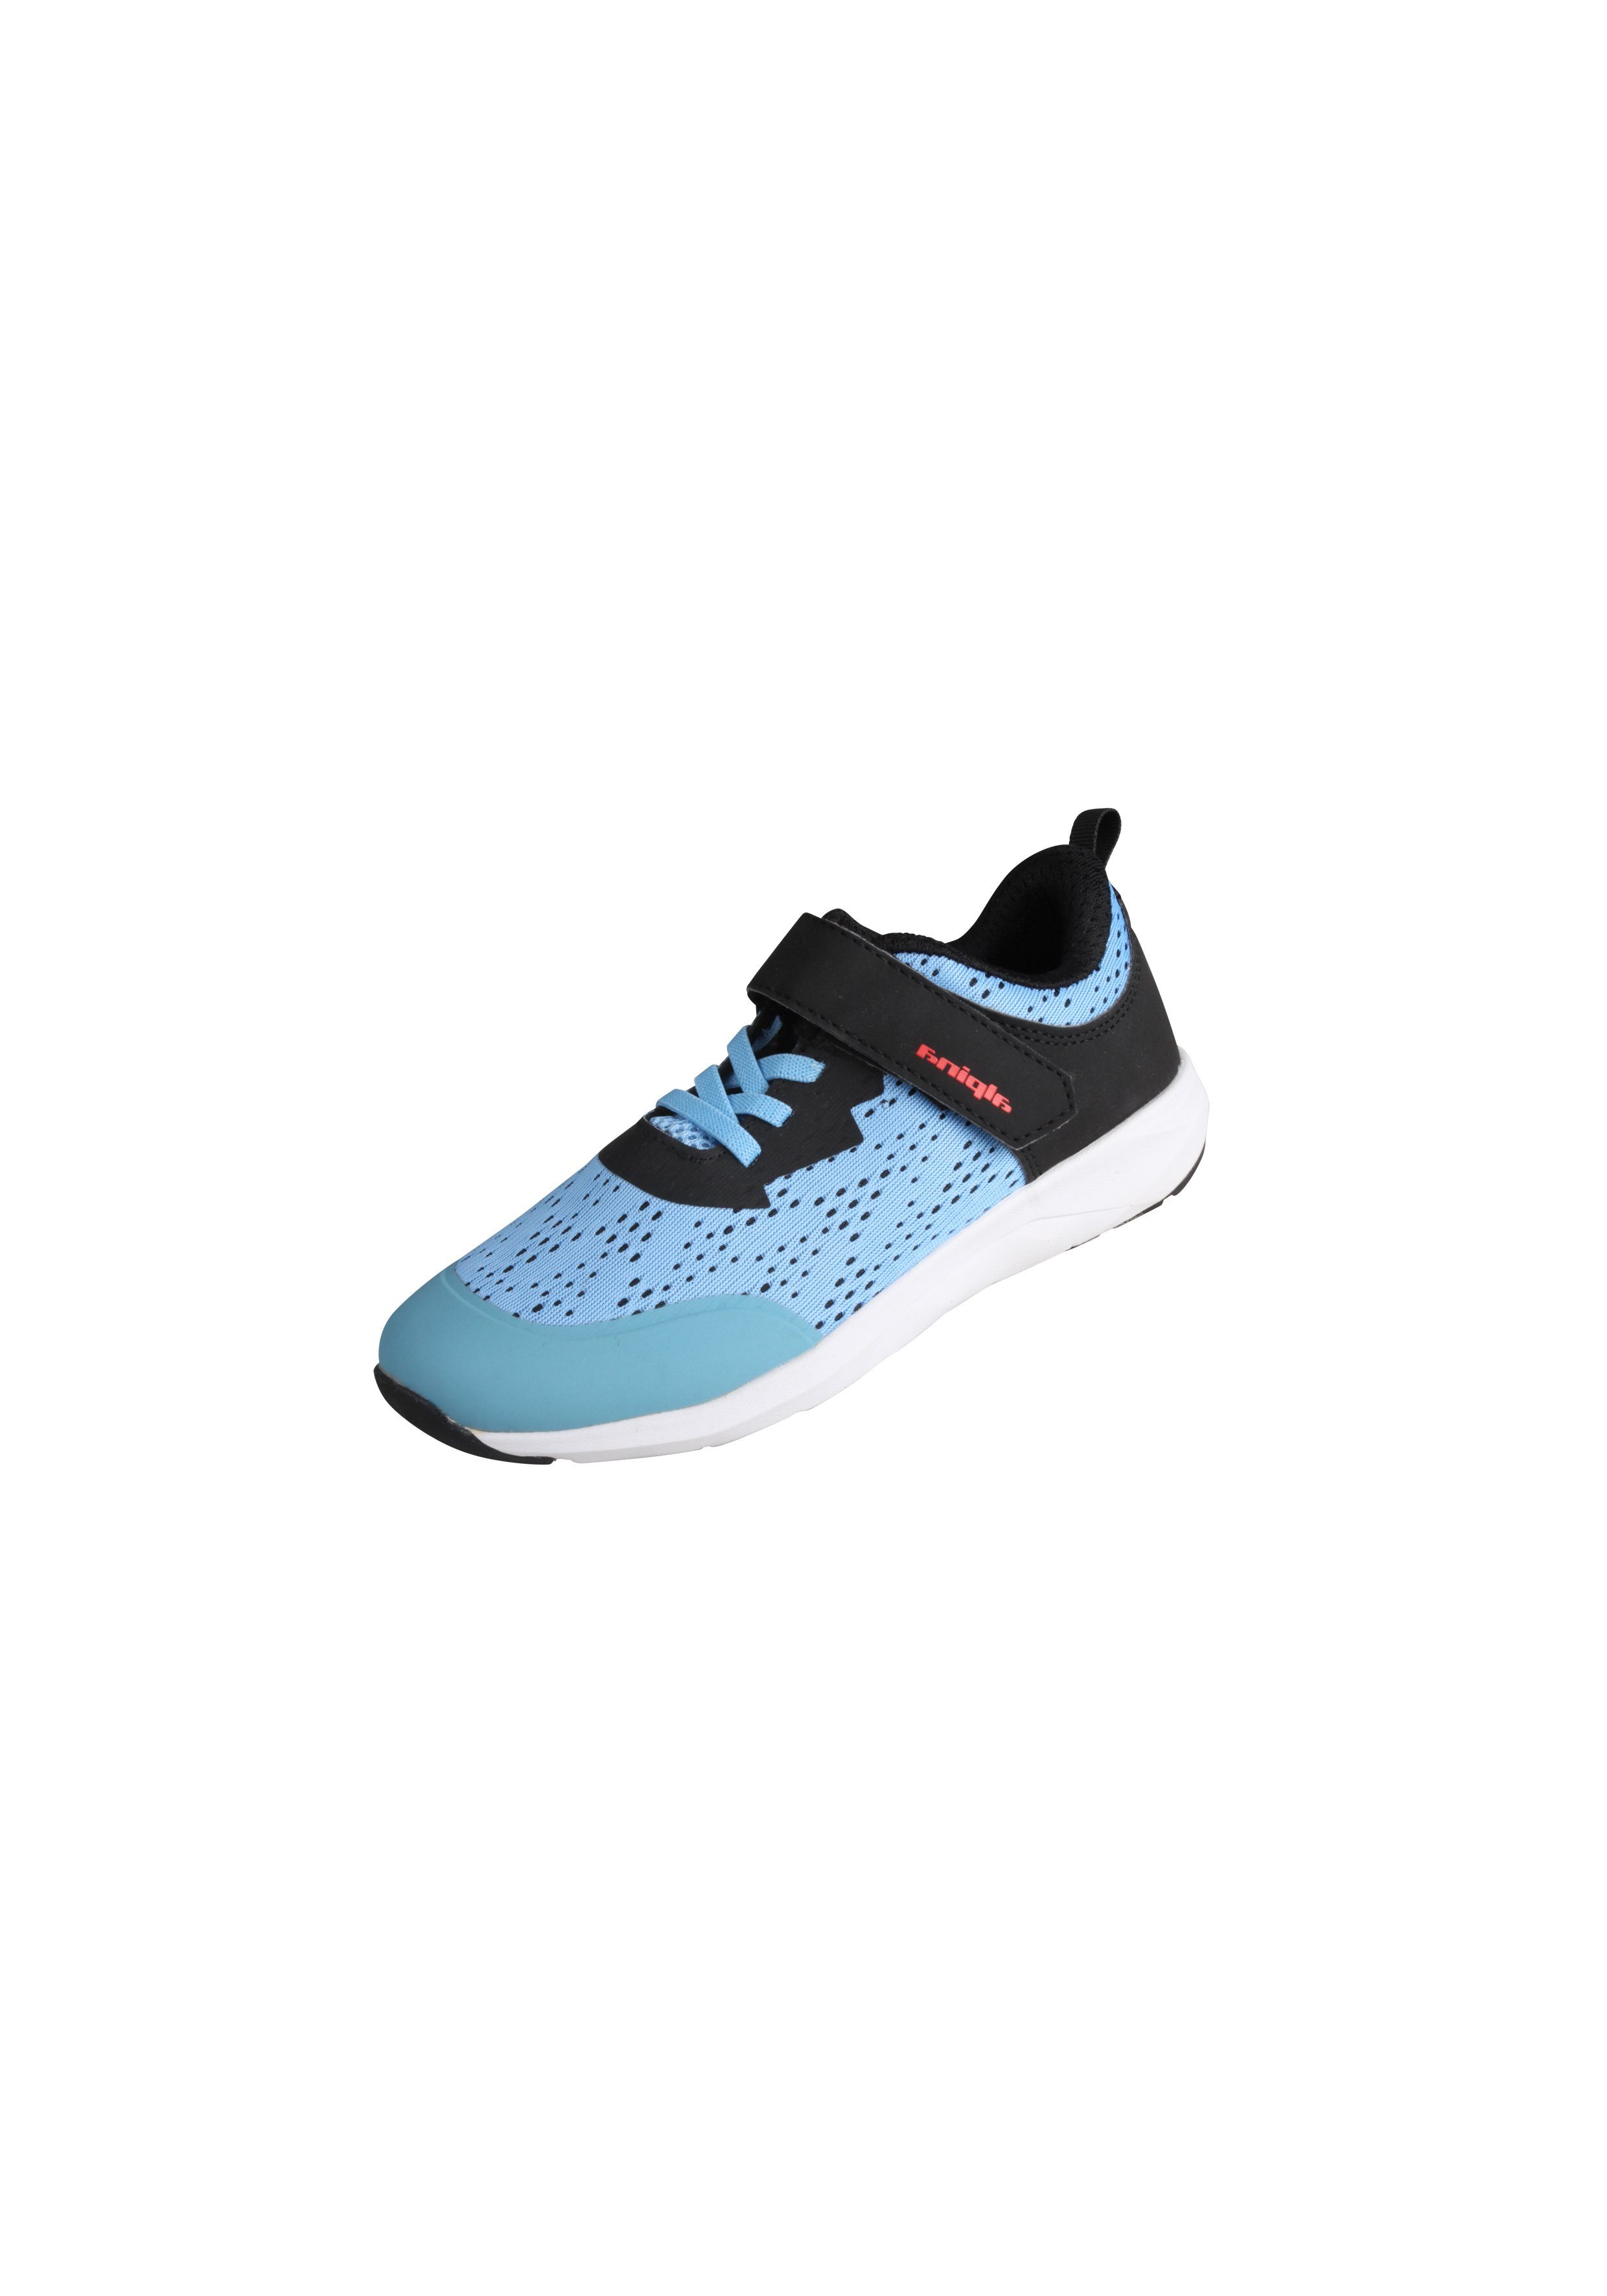 Supergünstiger Neuartikel im Versandhandel mit Sneaker verstärkter Ferse Sports Fun Alpina blau-schwarz